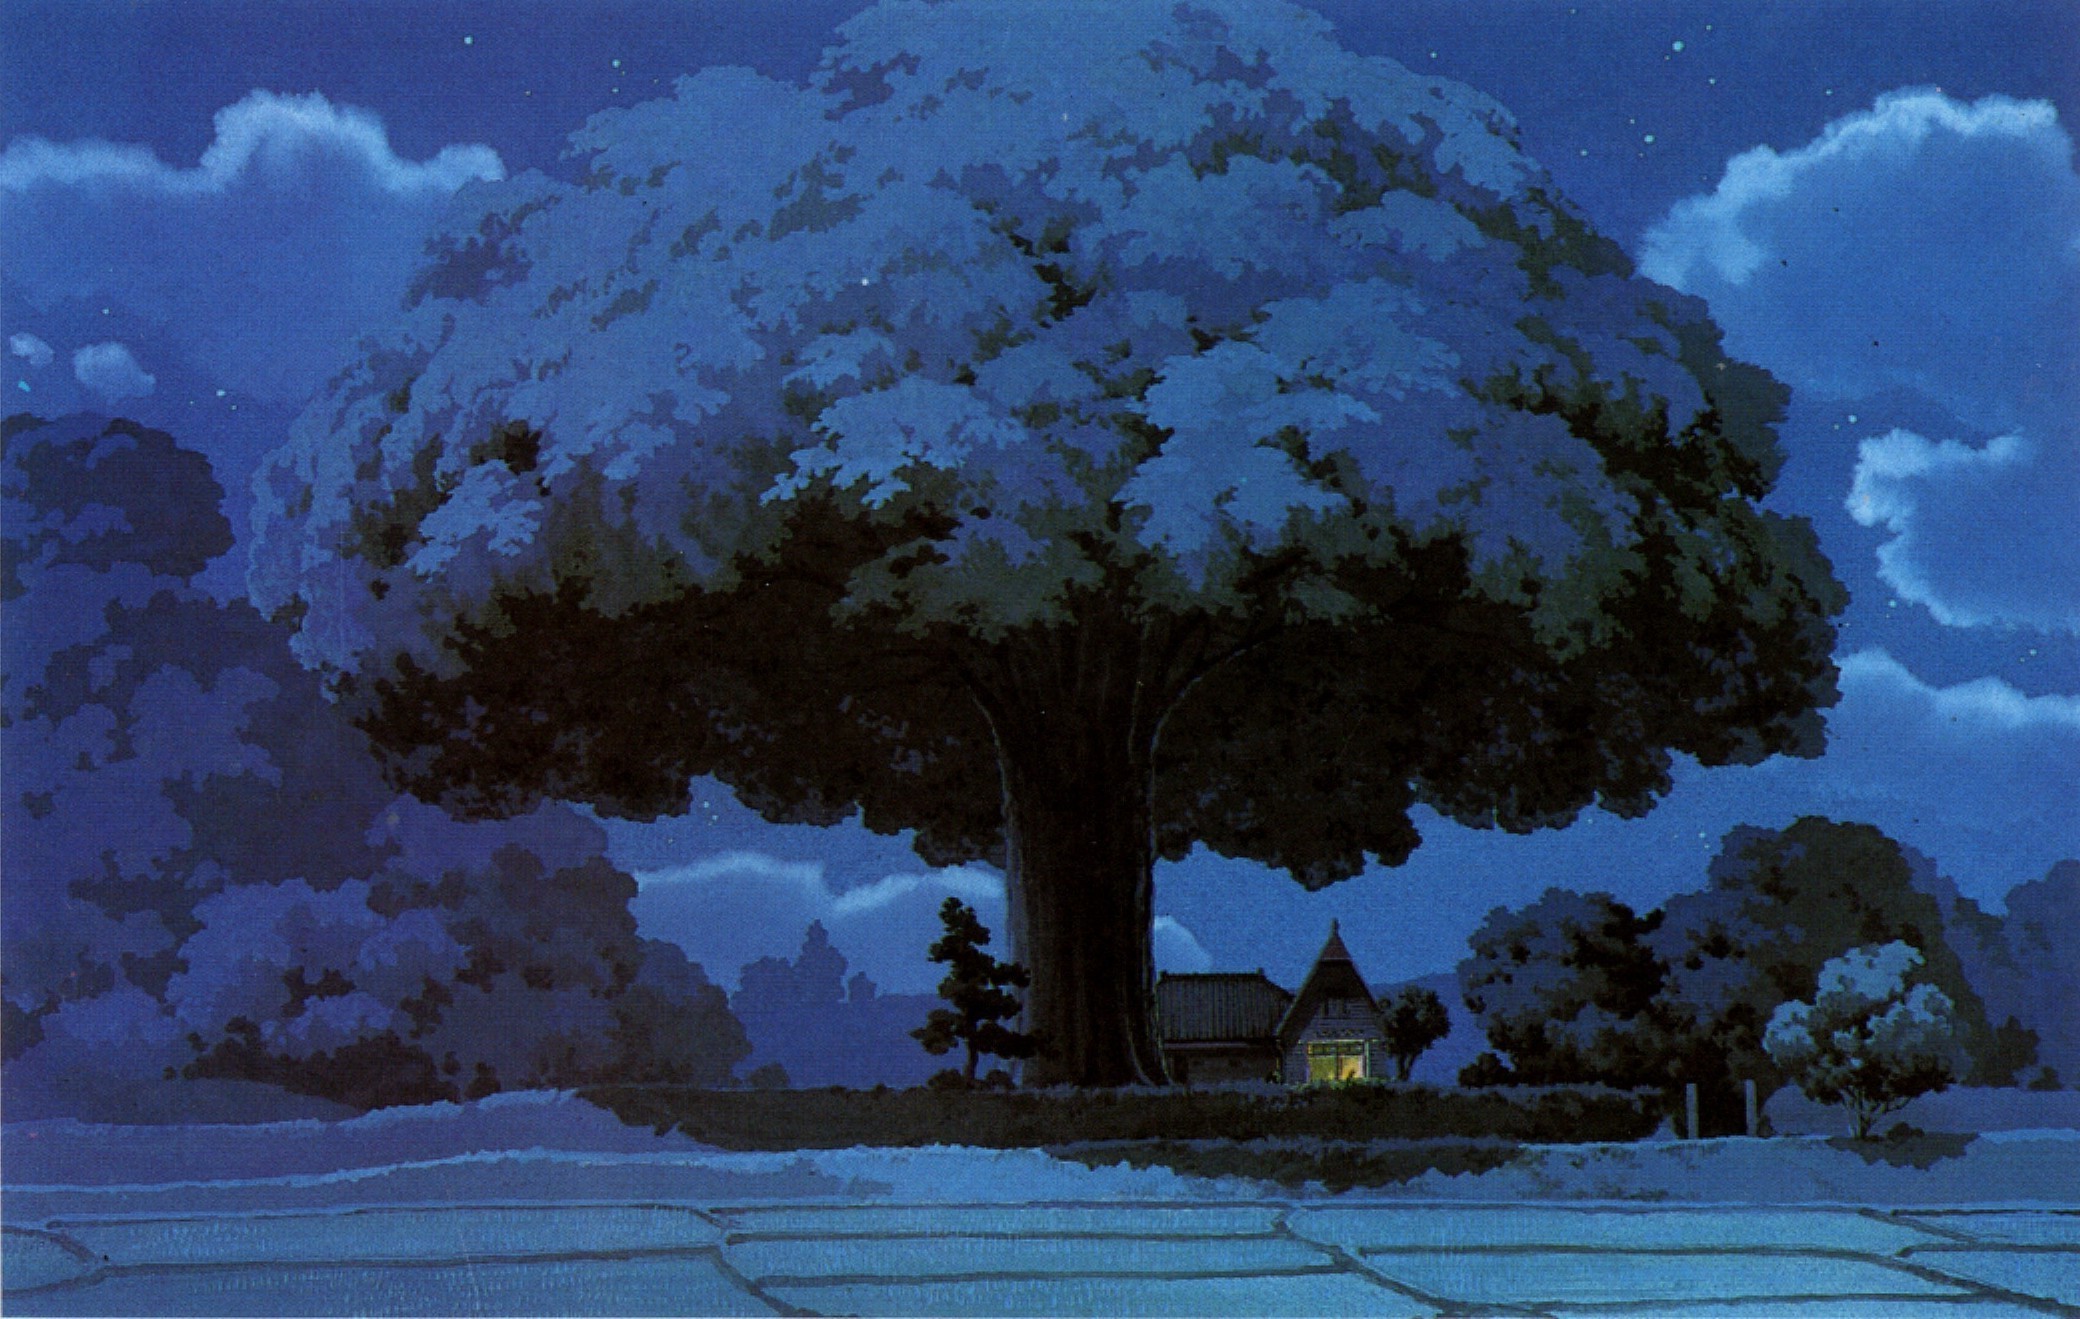 2080x1319 1920x1300 Ghibli Wallpaper Design Ideas ~ Pin Dark Studio Ghibli Wallpaper .